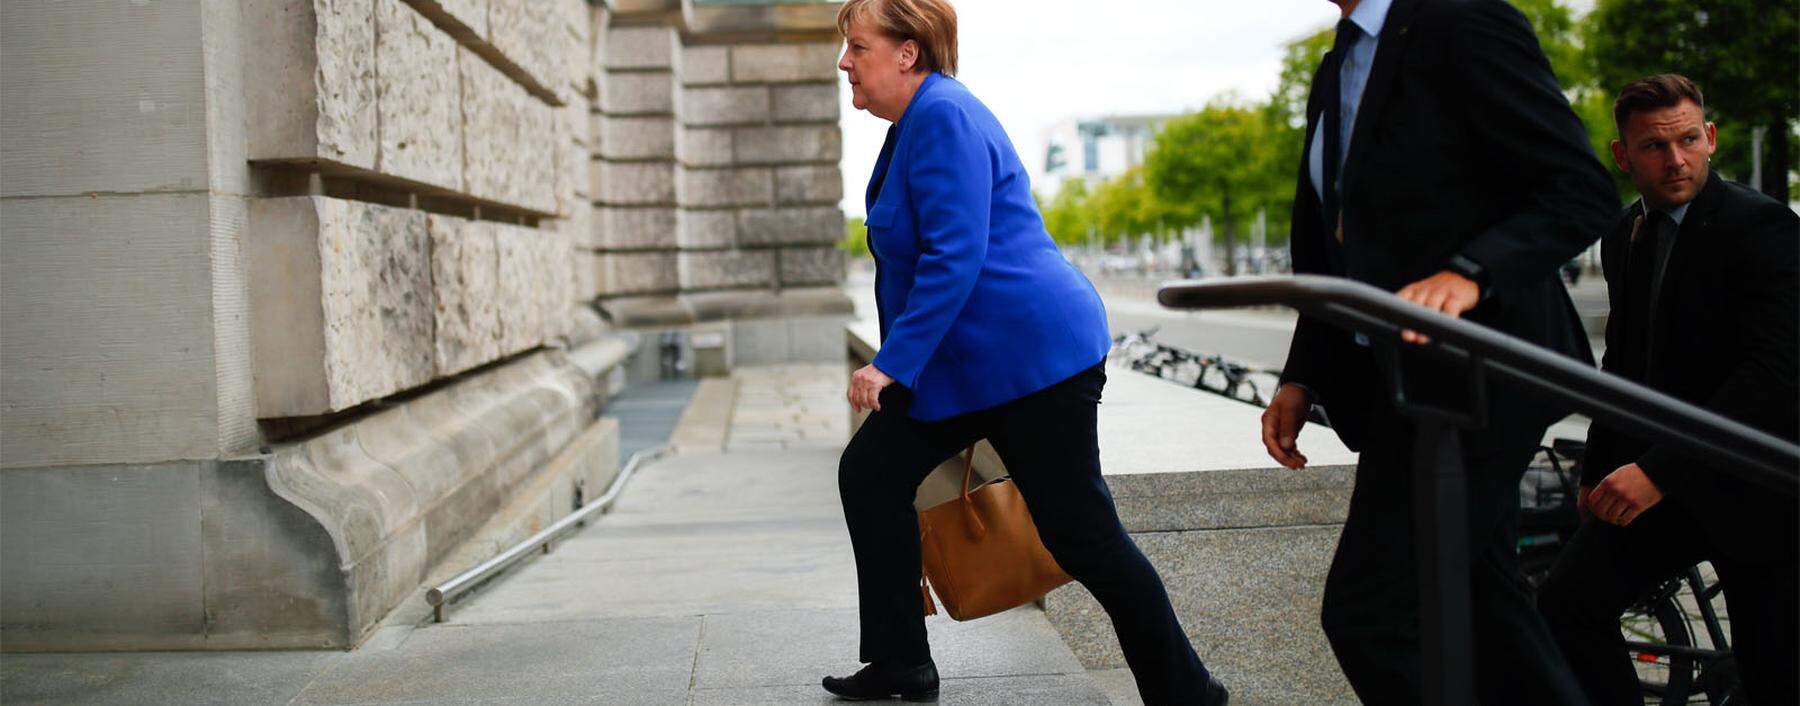 2021 soll endgültig Schluss sein. Dann will die deutsche Bundeskanzlerin, Angela Merkel, die politische Bühne verlassen. Und was wird dann aus der CDU?